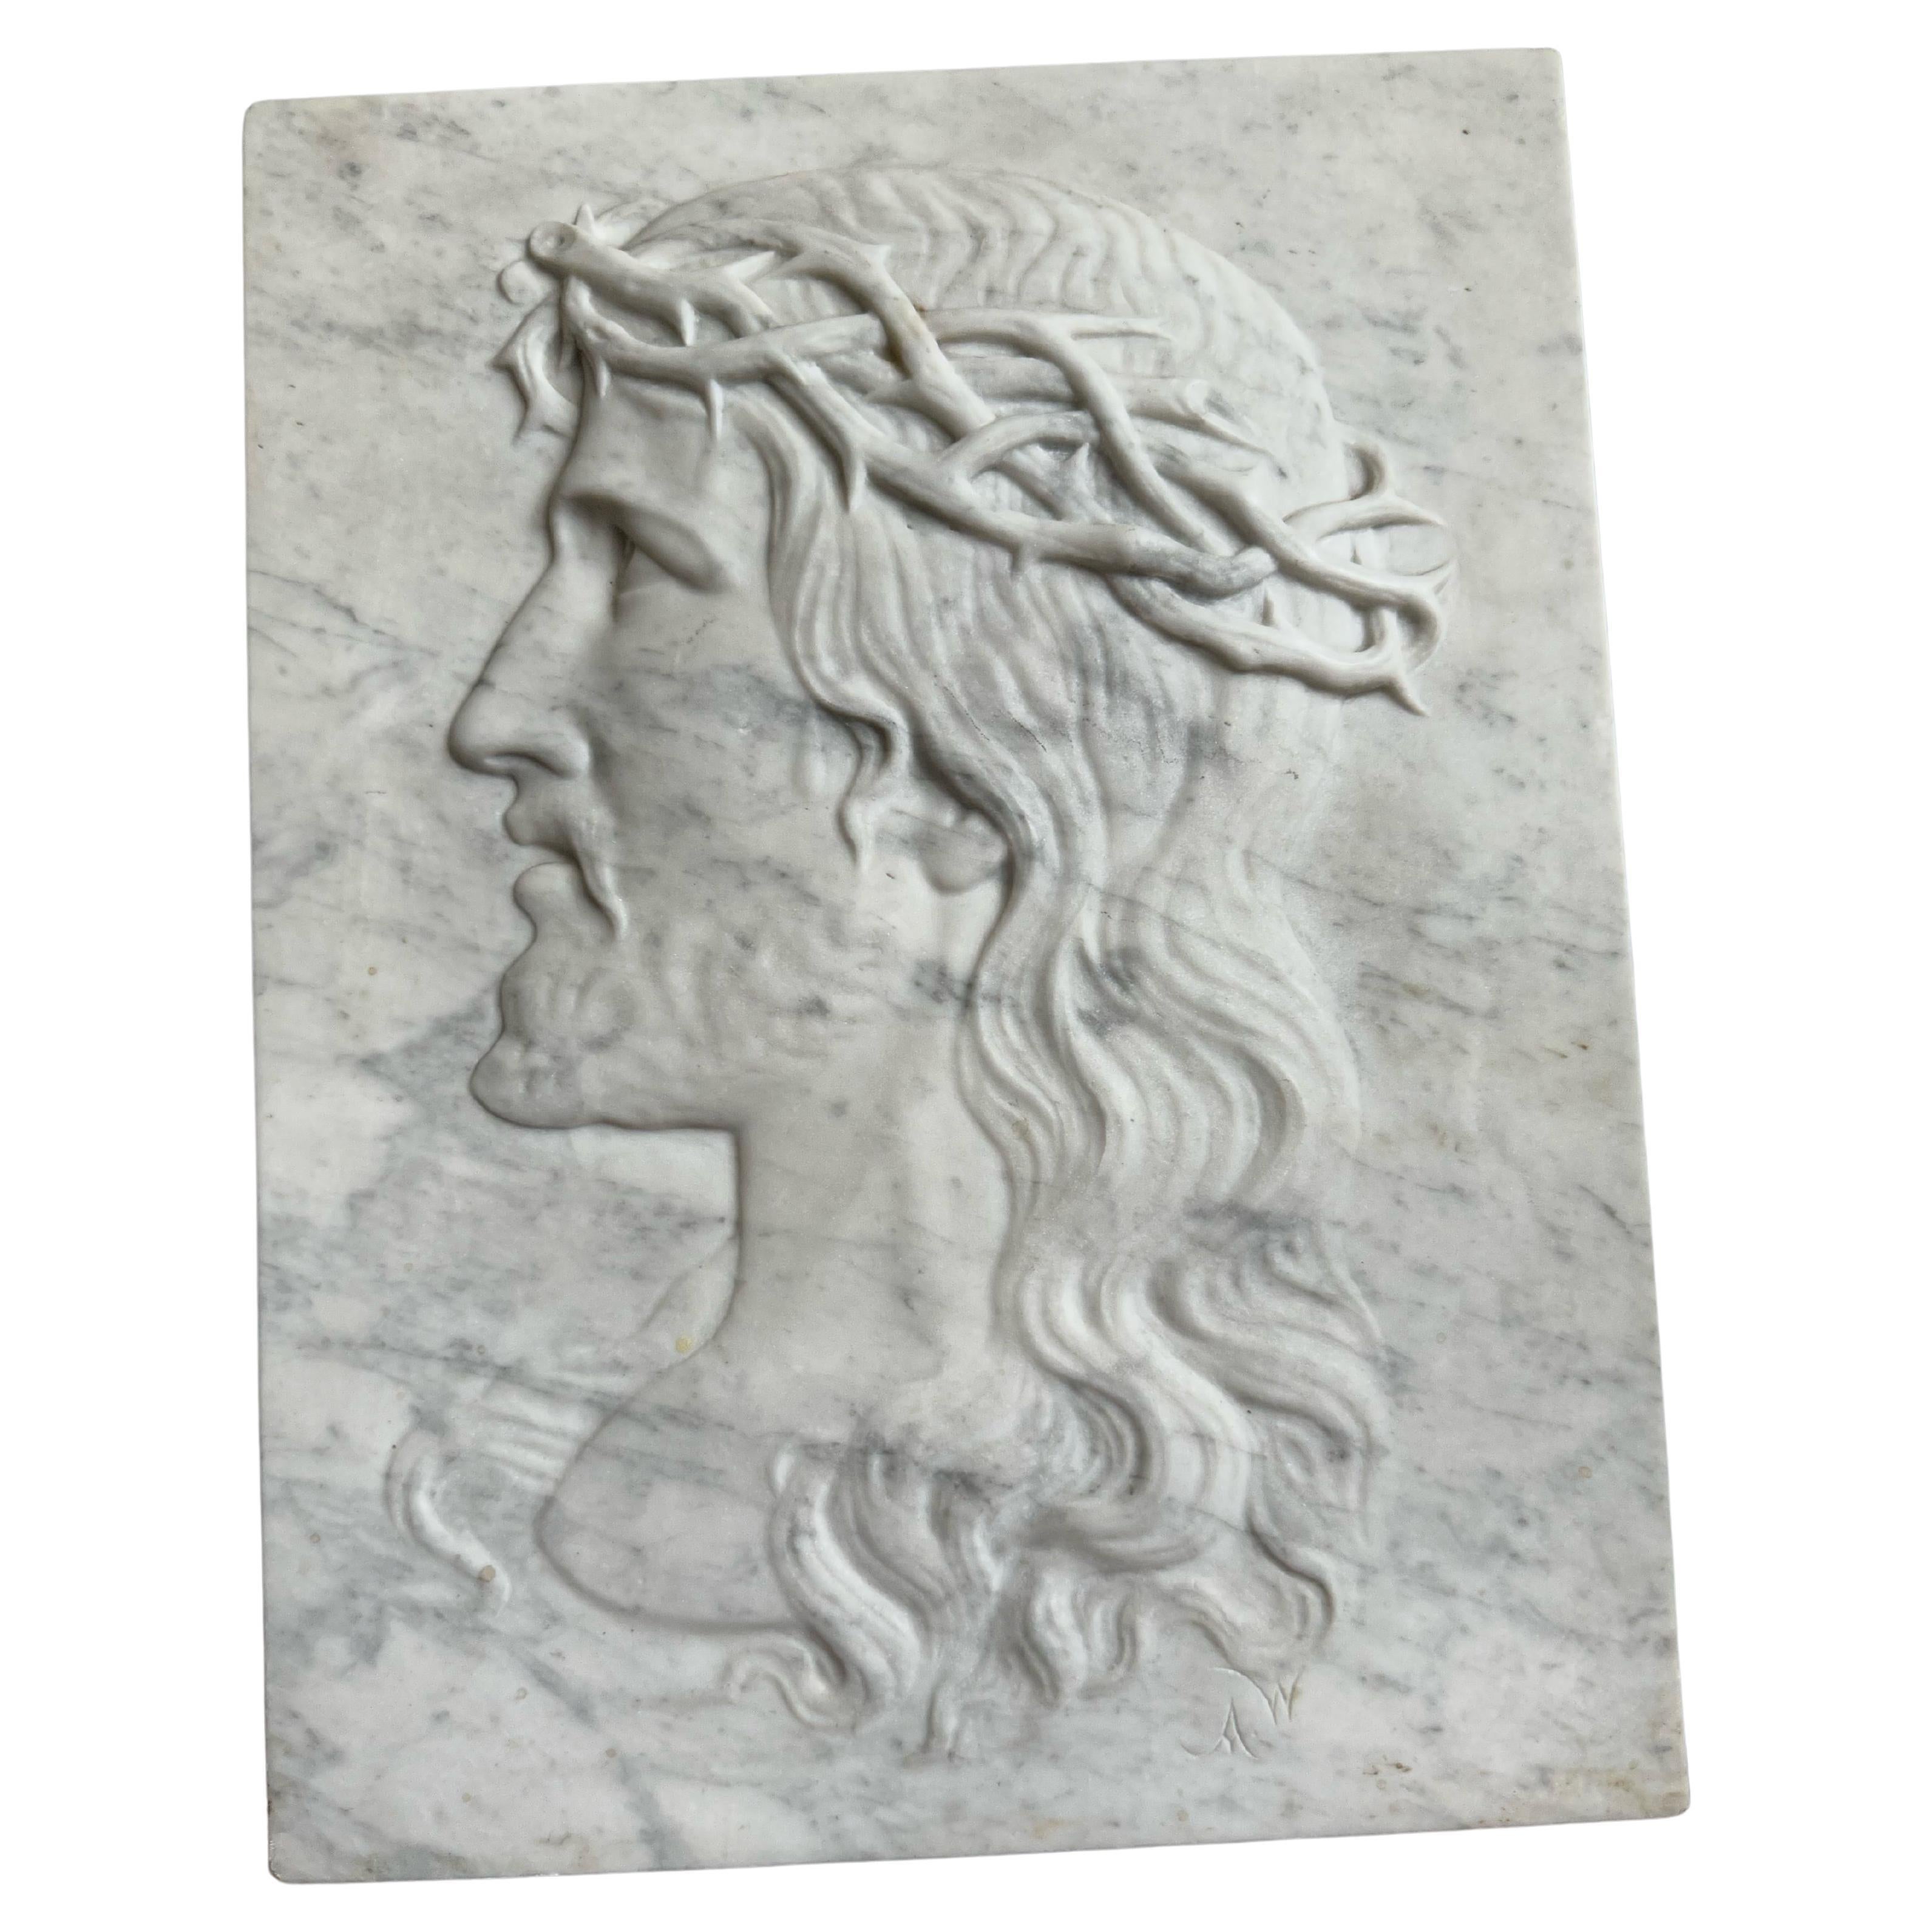 Grande plaque de marbre antique et sculptée à la main, sculpture de Jésus. Couronne d'épines